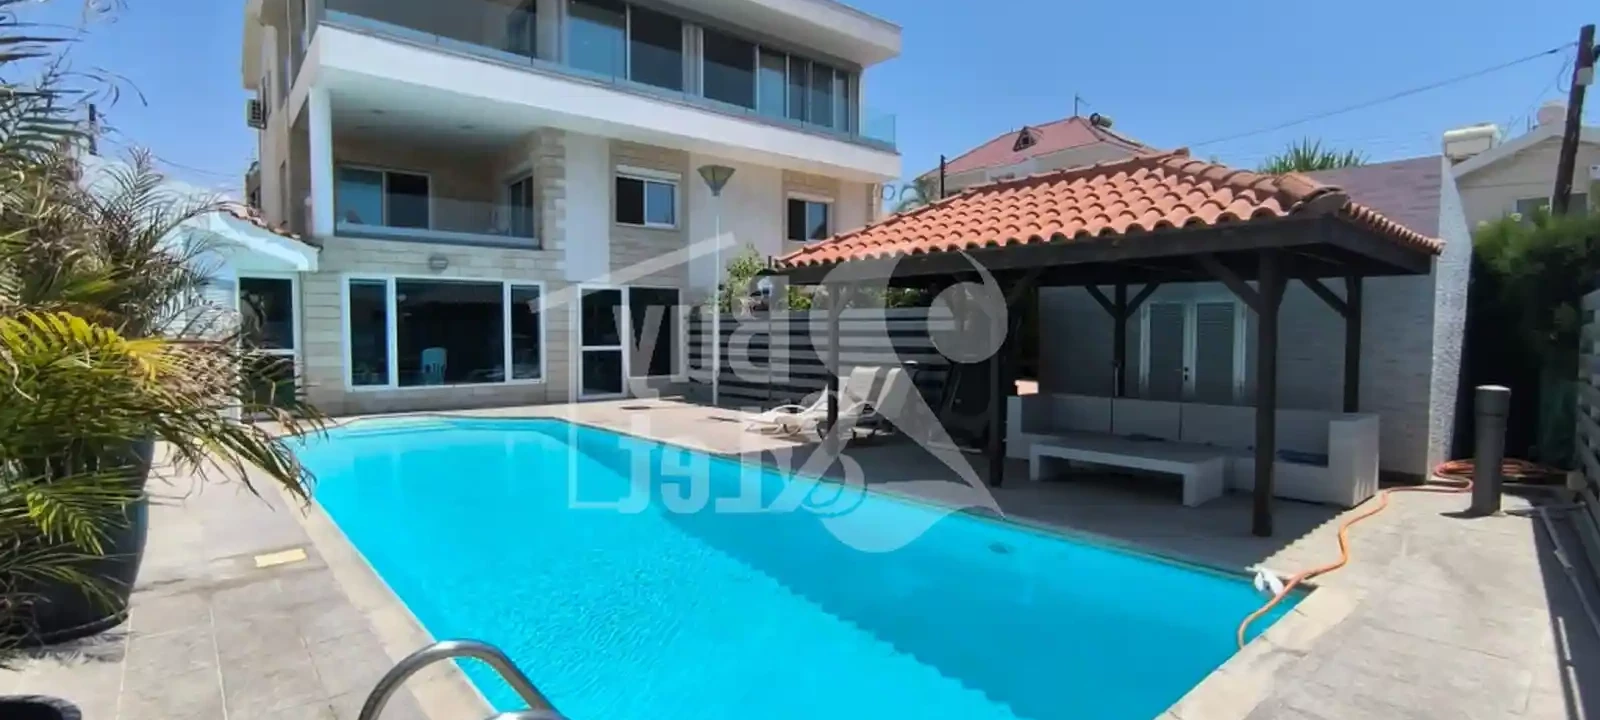 4-bedroom villa to rent €7.000, image 1